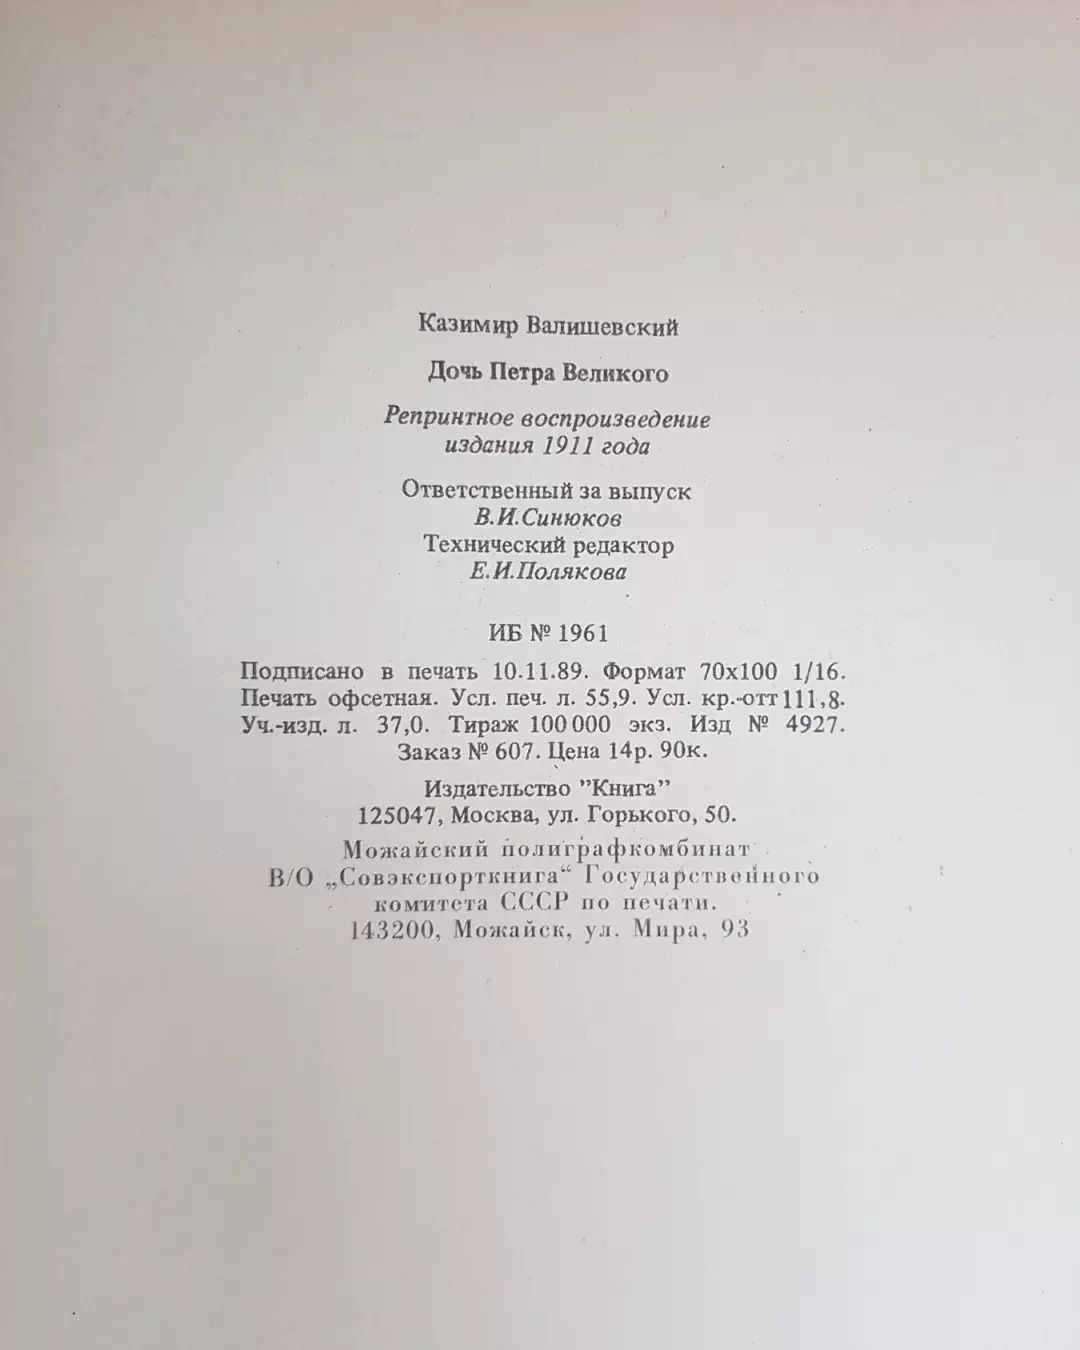 Дочь Петра великого, К. Велишевский 1989 год